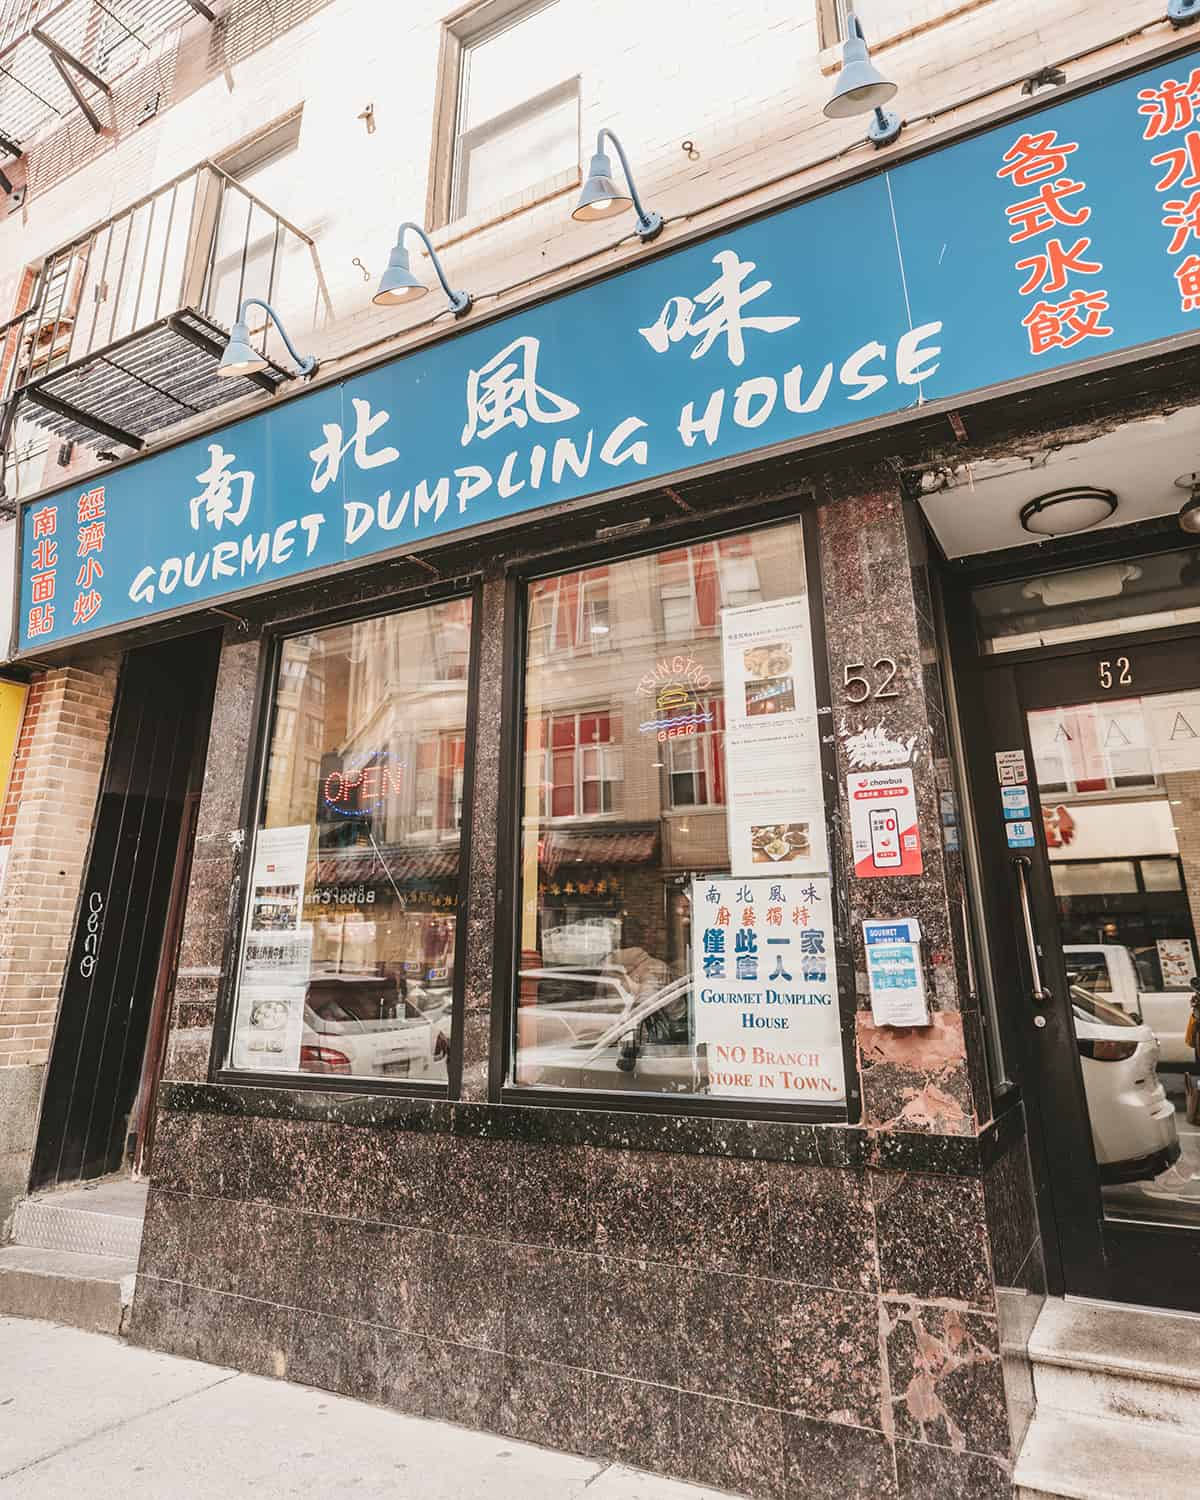 Gourmet Dumpling House in Boston MA